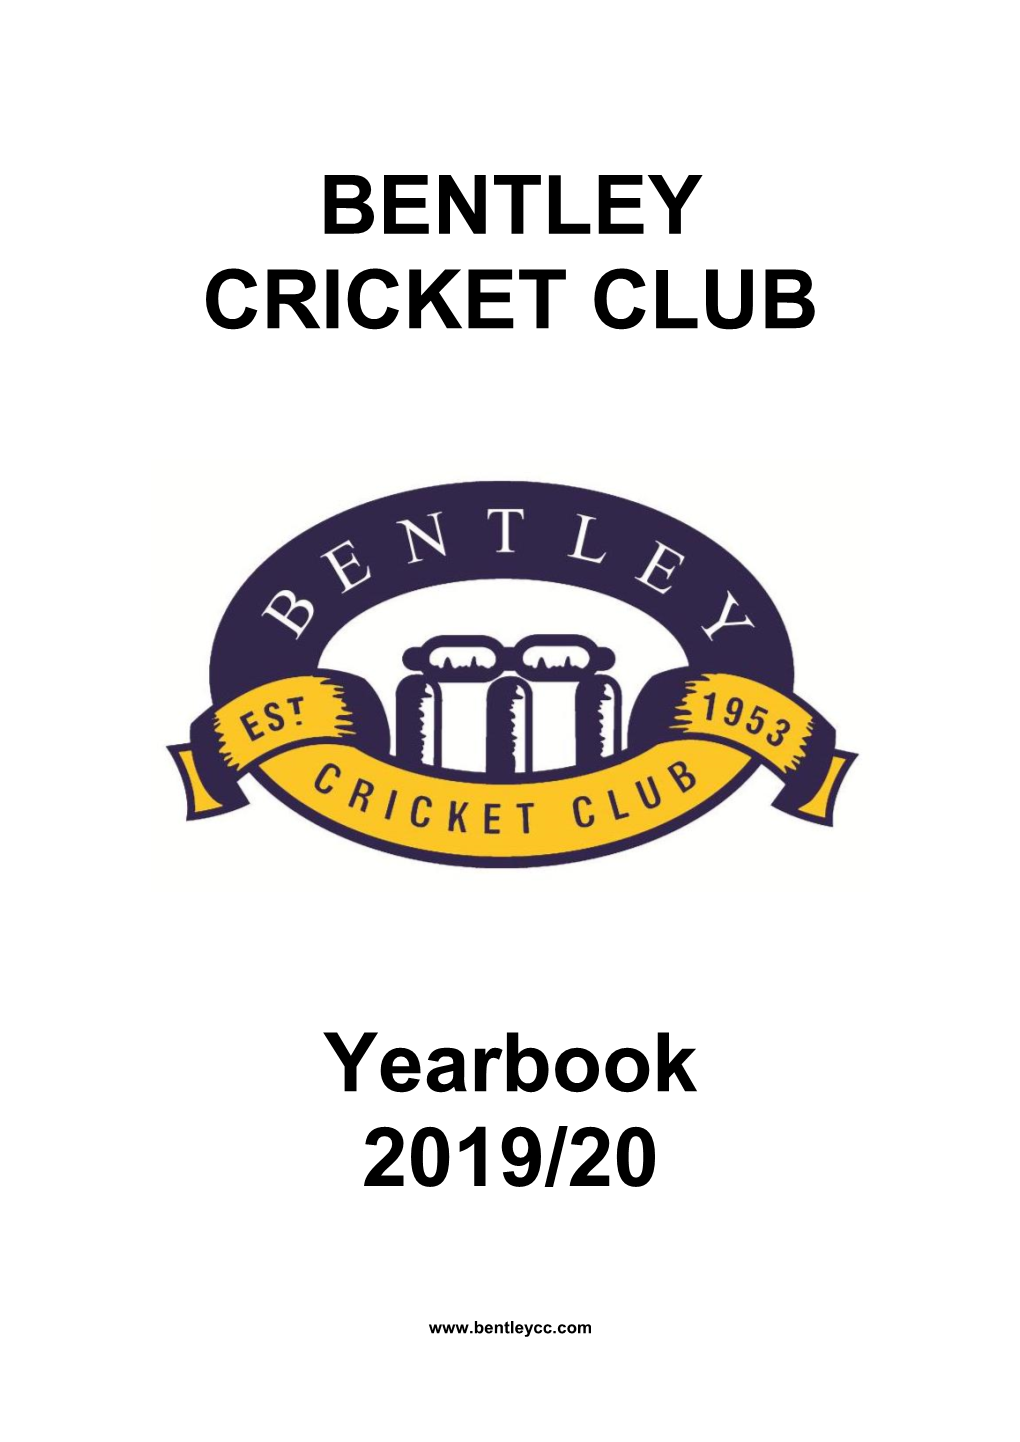 BENTLEY CRICKET CLUB Yearbook 2019/20